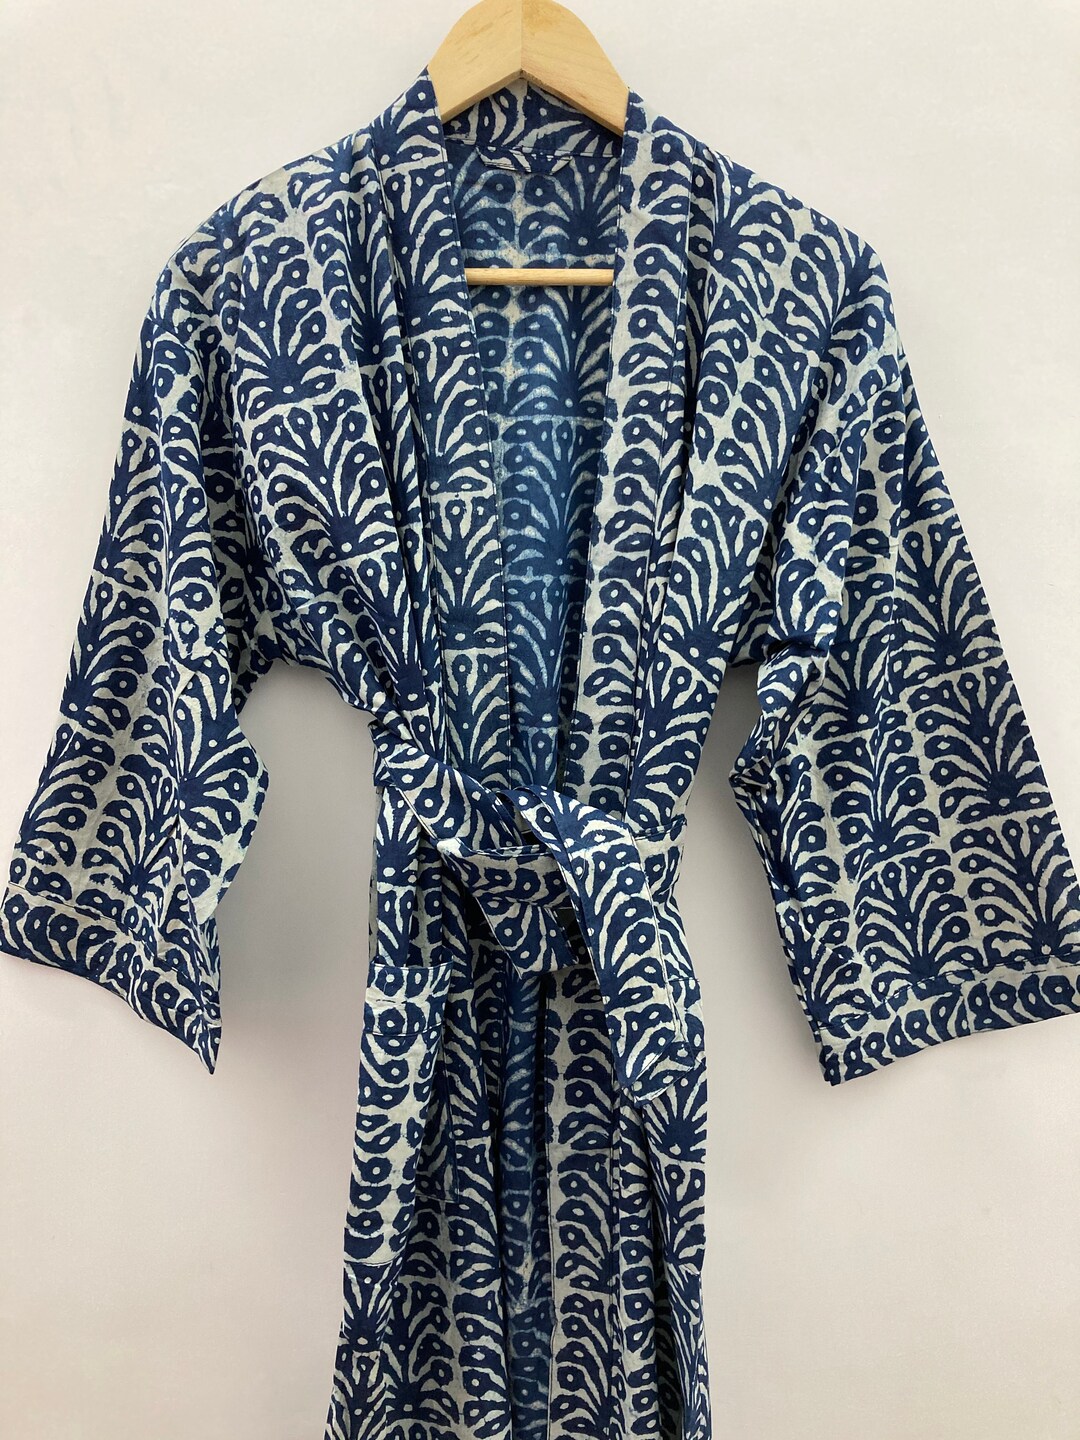 Floral Indigo Blue and White Natural Dye Kimono Dress - Etsy